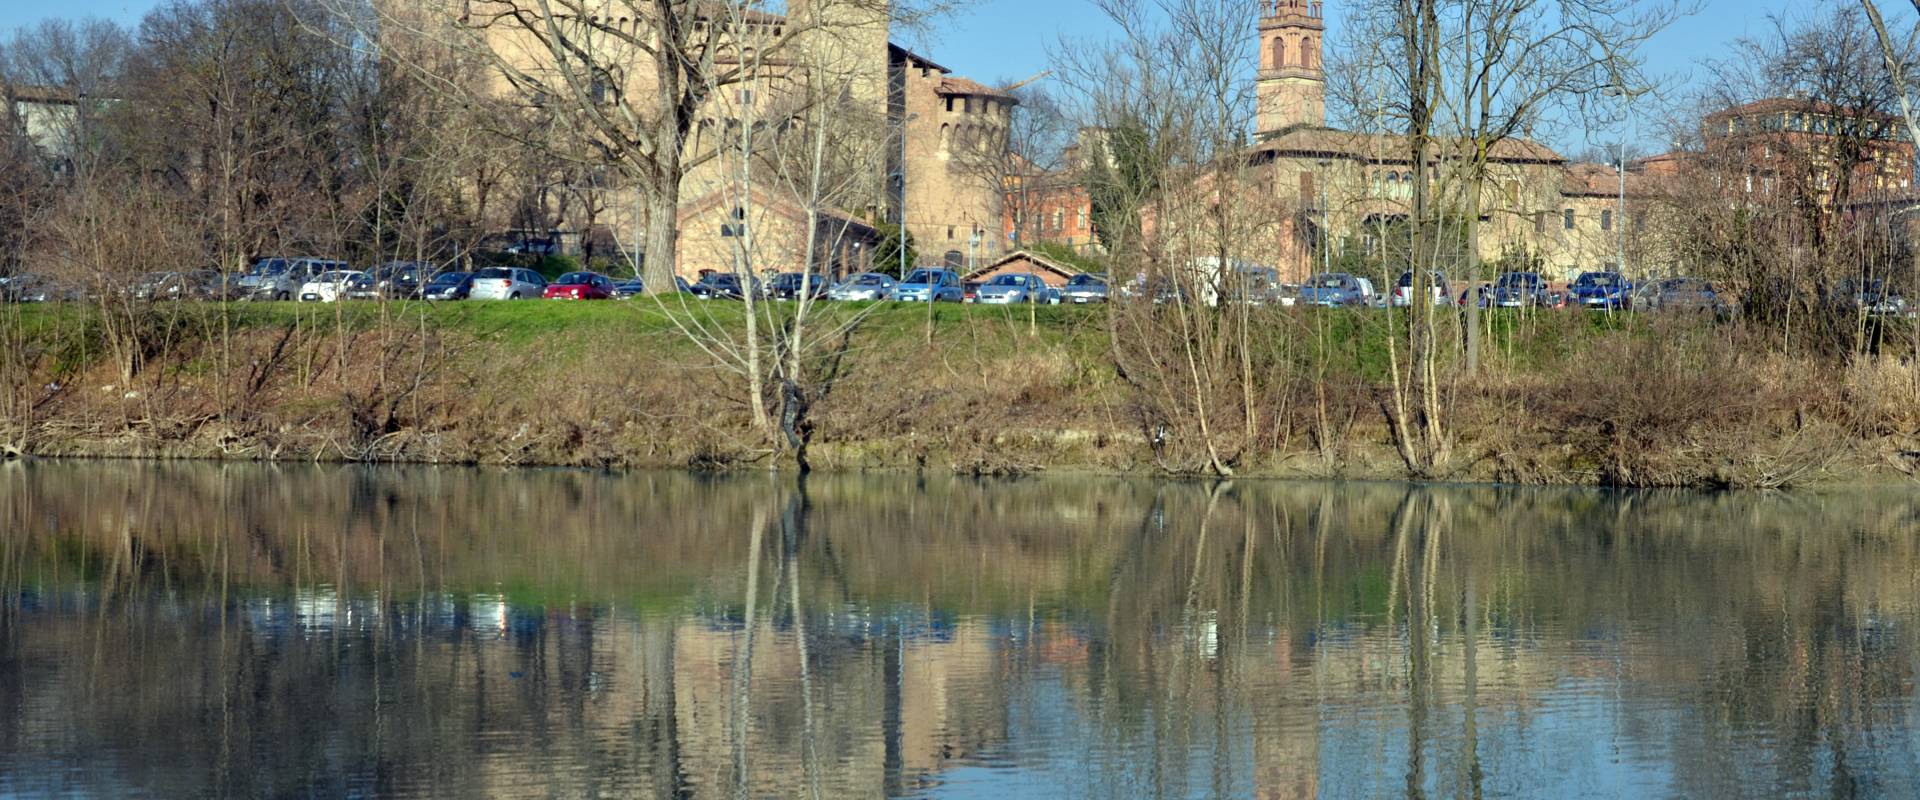 La Rocca Di Vignola riflessa nel fiume Panaro photo by Franco baldaccini